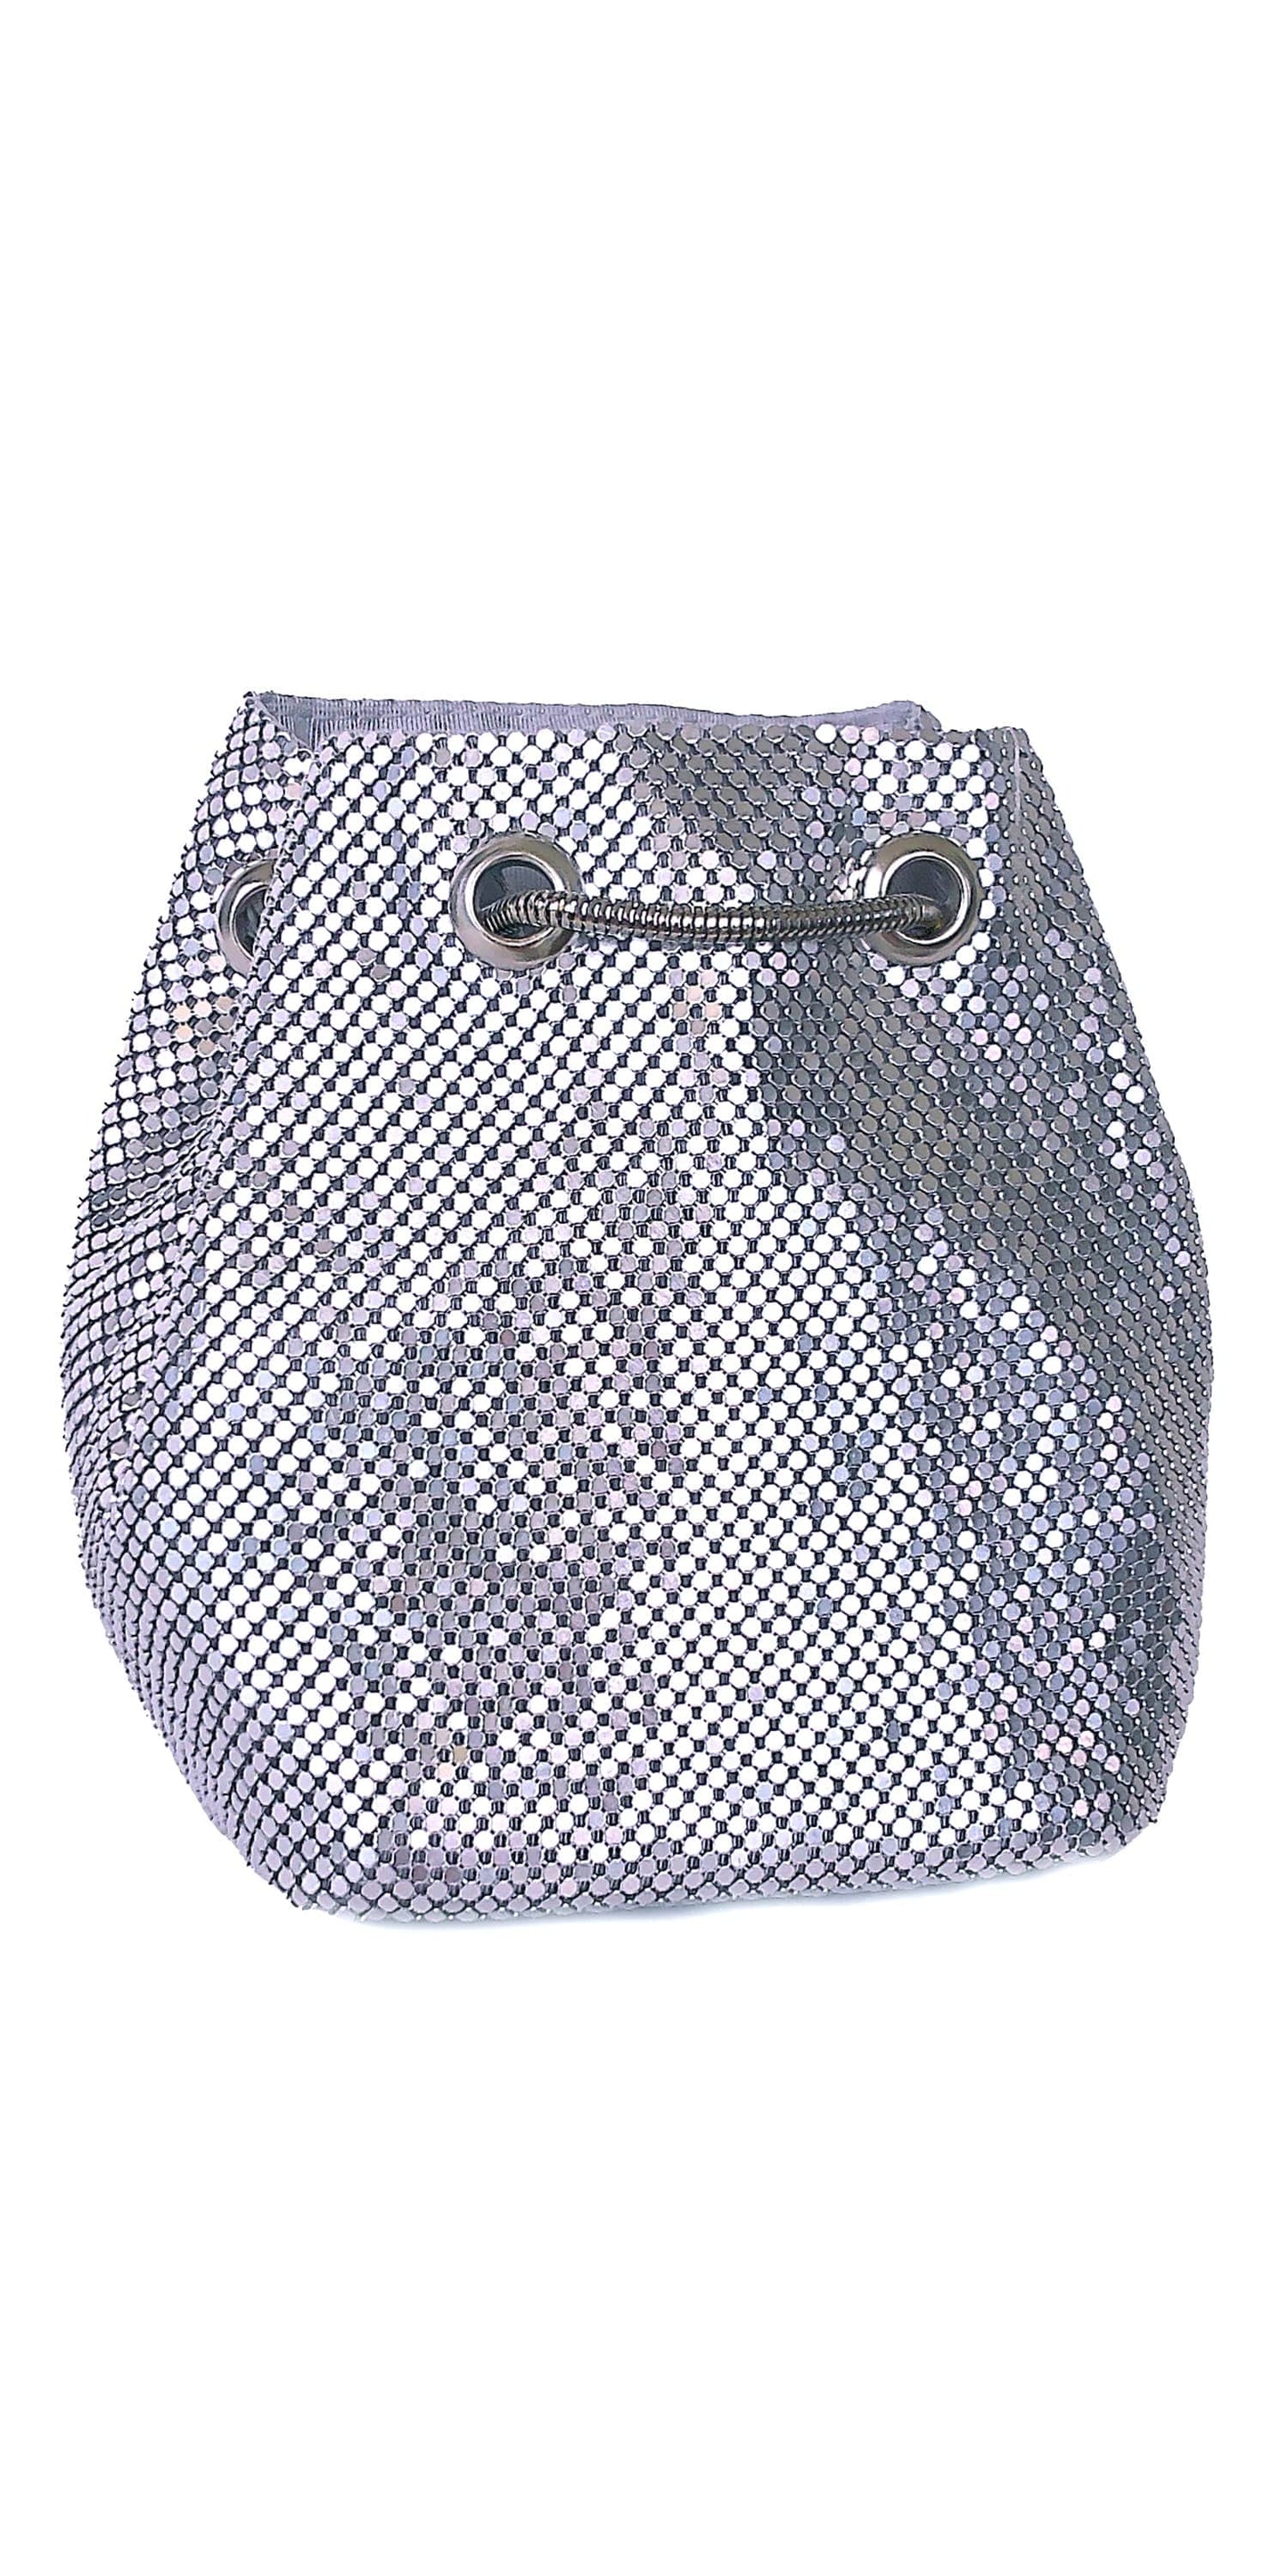 Camille La Vie Metal Mesh Soft Bucket Handbag OS / silver